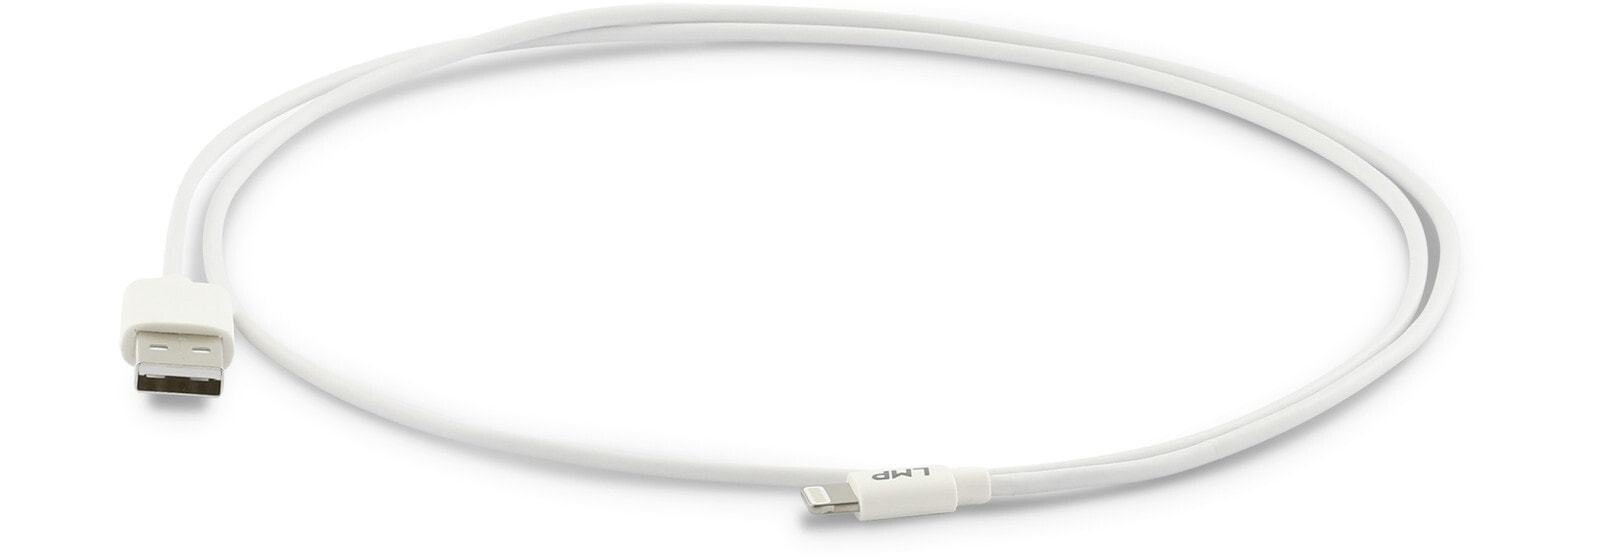 LMP 11760. Длина кабеля: 0,5 м, Разъем 1: Молния, Разъем 2: USB A. Количество в упаковке: 1 шт., Тип упаковки: Полиэтиленовый пакет